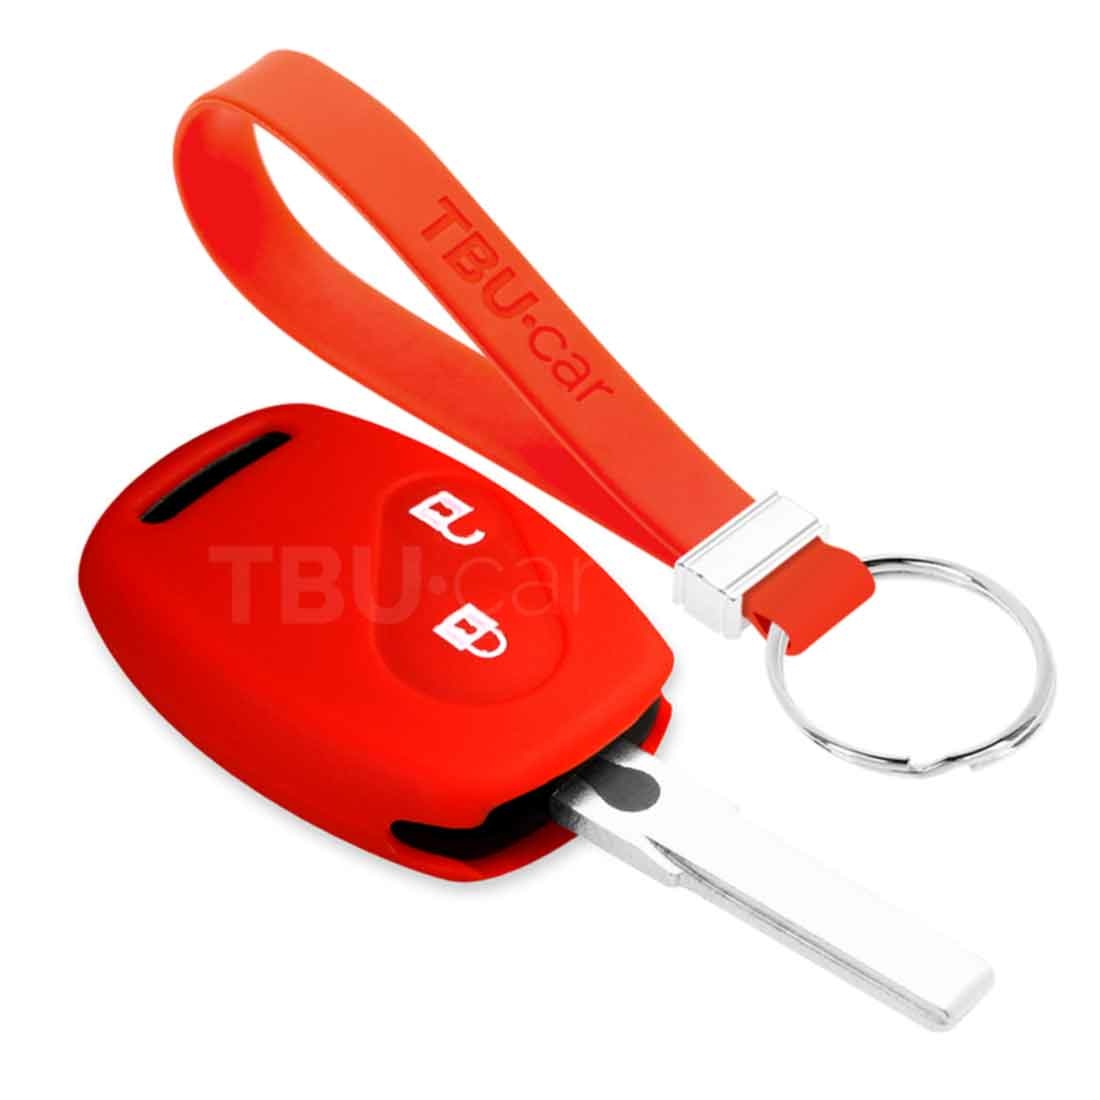 TBU car TBU car Housse de Protection clé compatible avec Honda - Coque Cover Housse étui en Silicone - Rouge